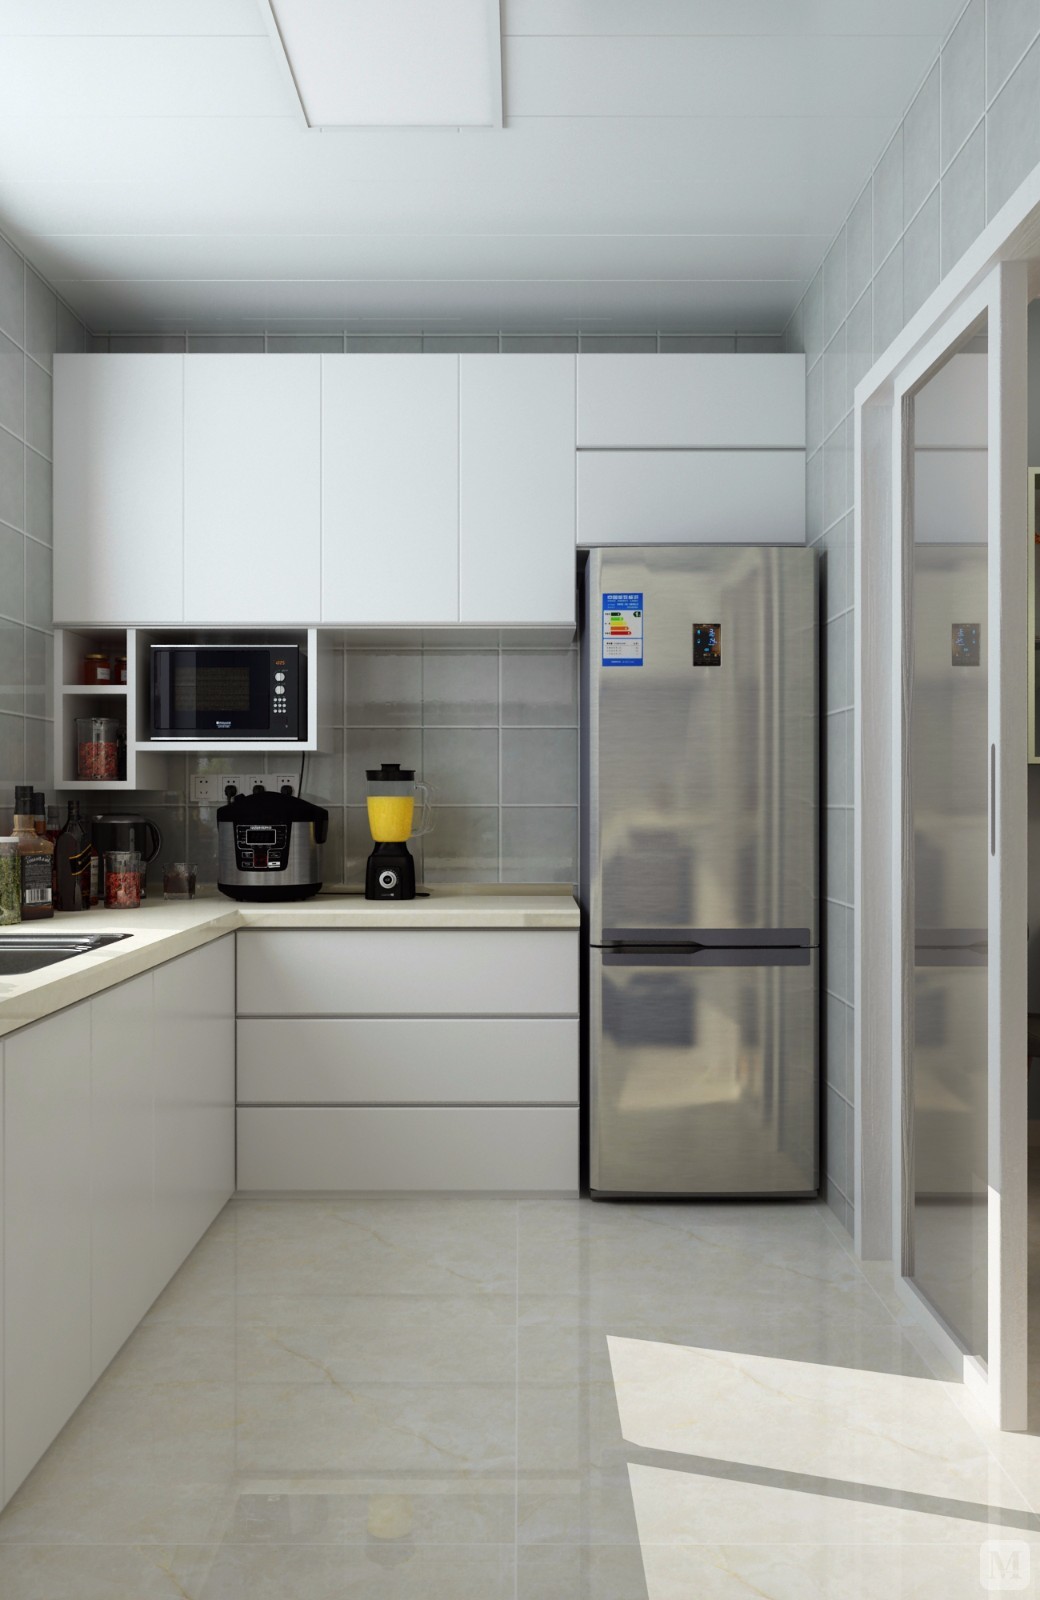 镶嵌在橱柜里的冰箱和电磁炉,高效的节省了空间,让电器跟橱柜融为一体